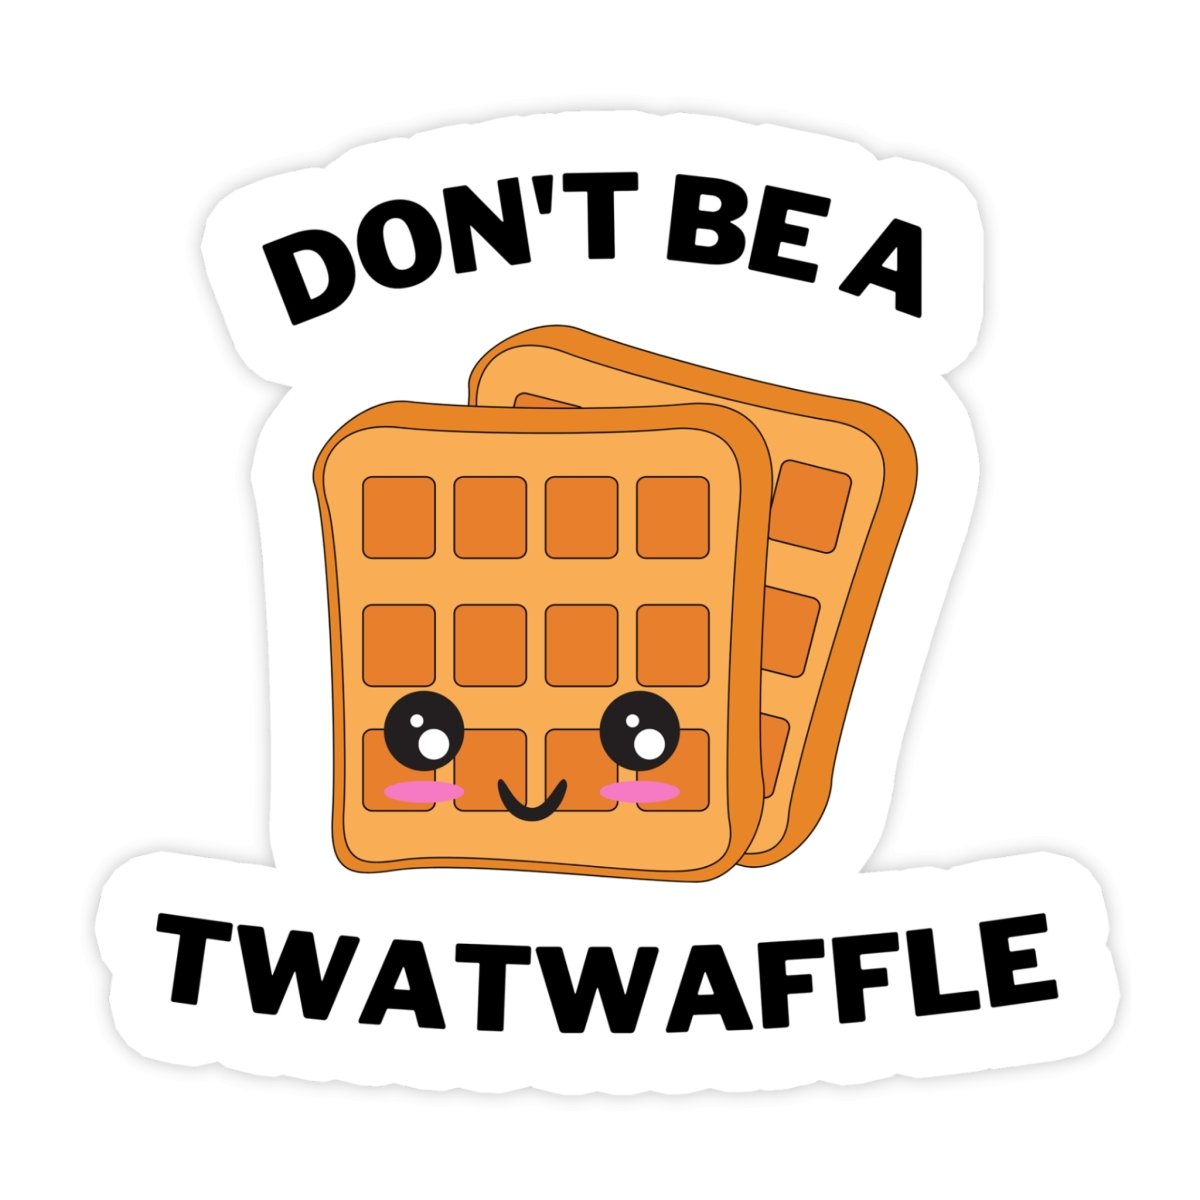 Don't Be A Twatwaffle Meme Sticker - stickerbullDon't Be A Twatwaffle Meme StickerRetail StickerstickerbullstickerbullTwatWaffle_#135Don't Be A Twatwaffle Meme Sticker